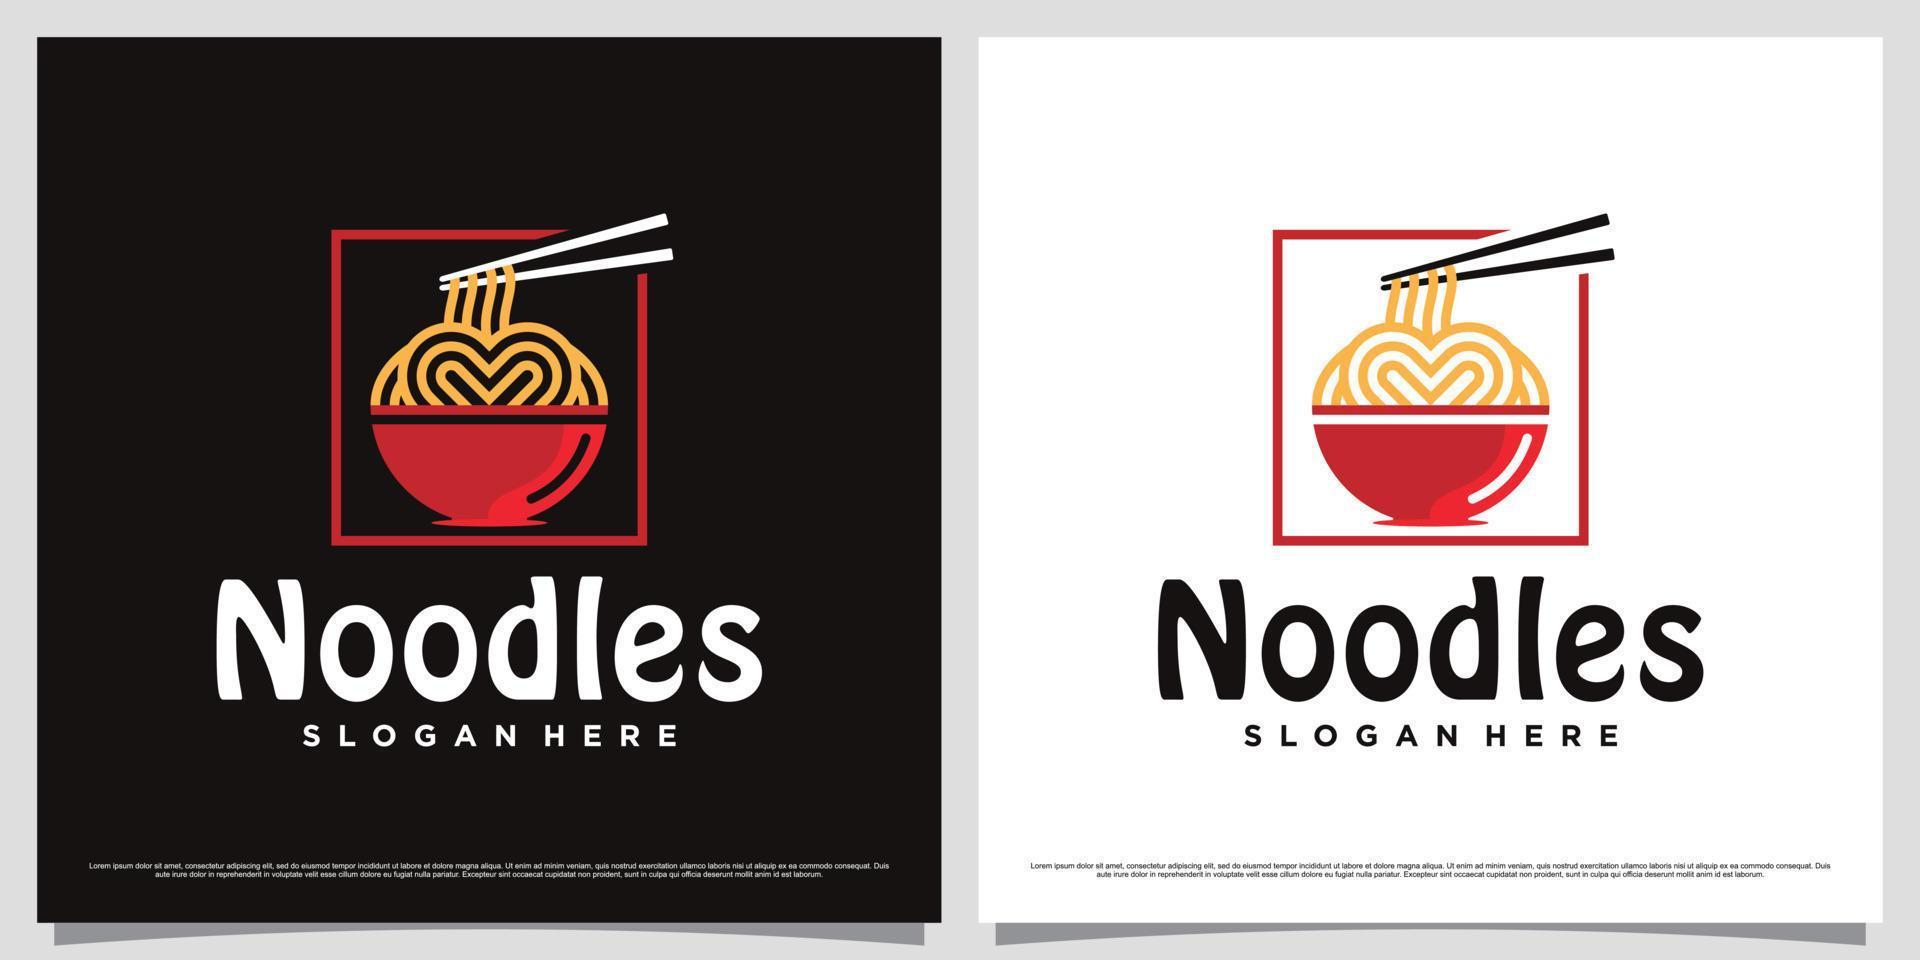 japanische Ramen-Nudel-Logo-Design-Vorlage mit einfachem Konzept und kreativem Element vektor